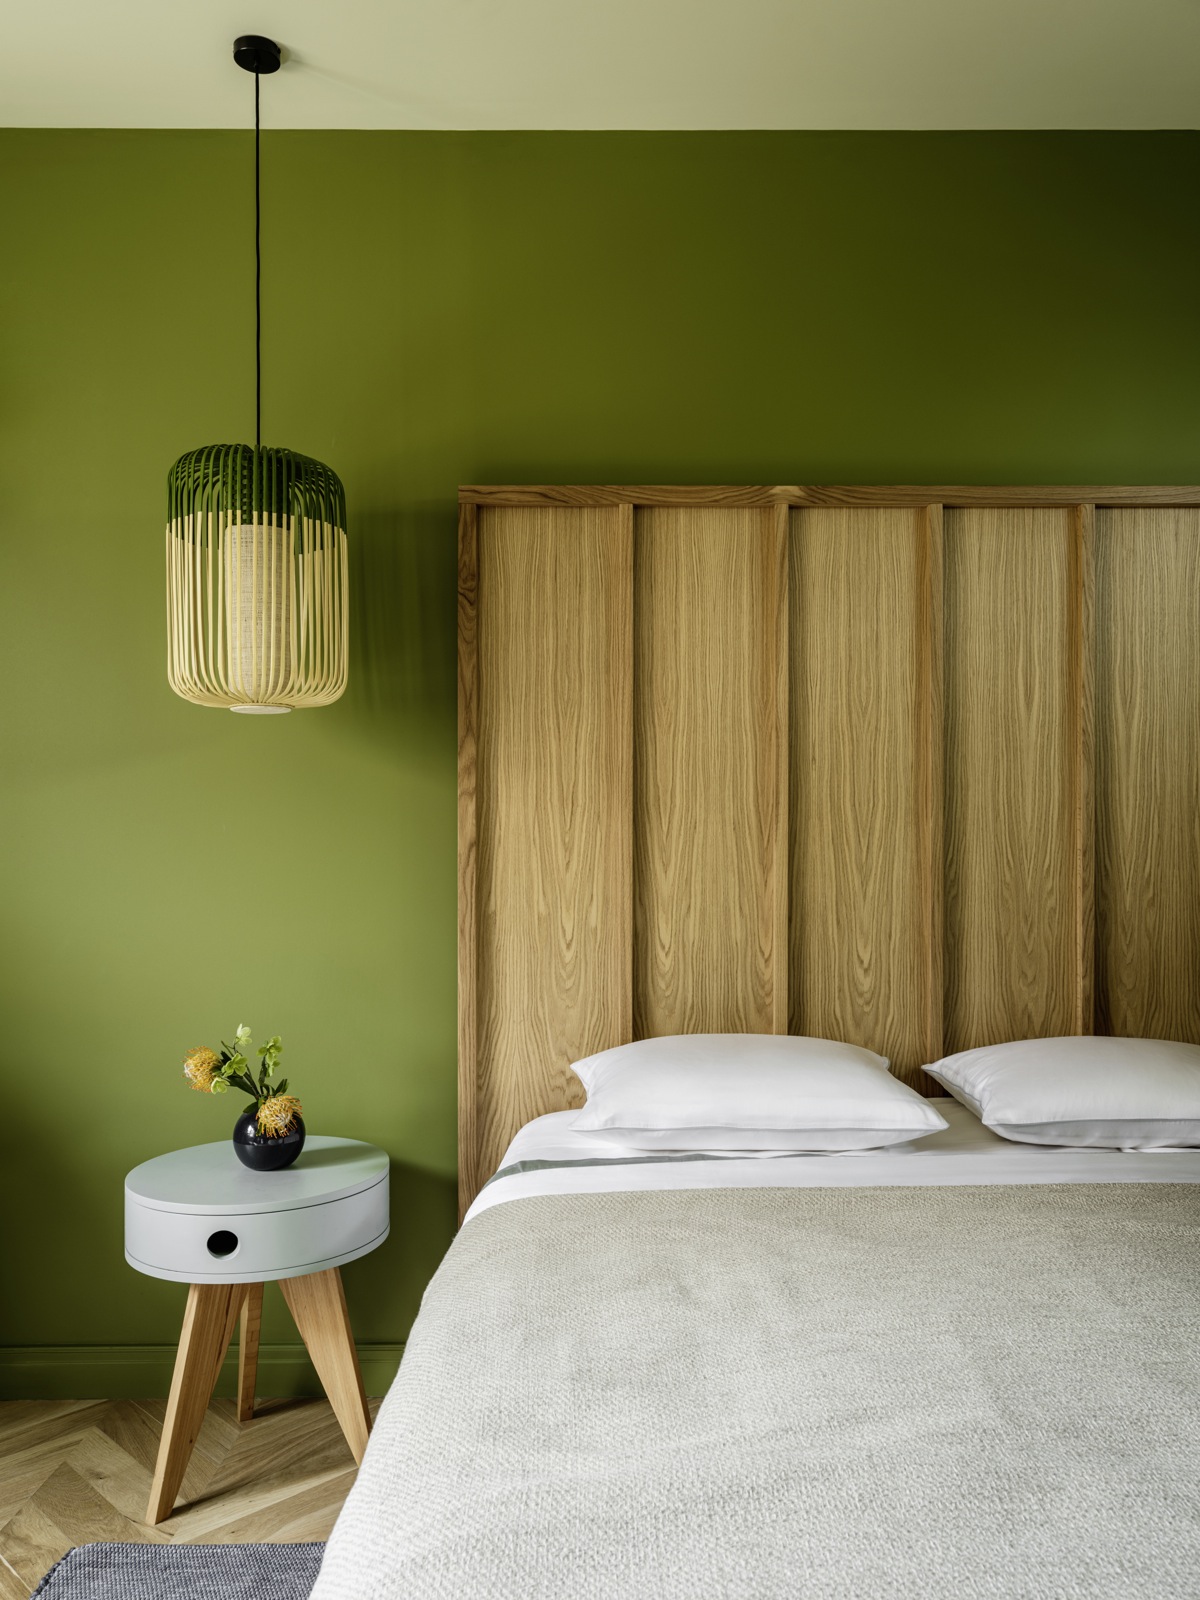 Vẻ đẹp mướt xanh và gần gũi với thiên nhiên nhờ gam màu xanh lá cây đậm nhạt cùng nội thất gỗ khiến ai bước vào phòng ngủ này cũng thấy thoải mái. Đặc biệt phải kể đến chiếc đèn thả trần “tone sur tone” duyên dáng với nền tường.